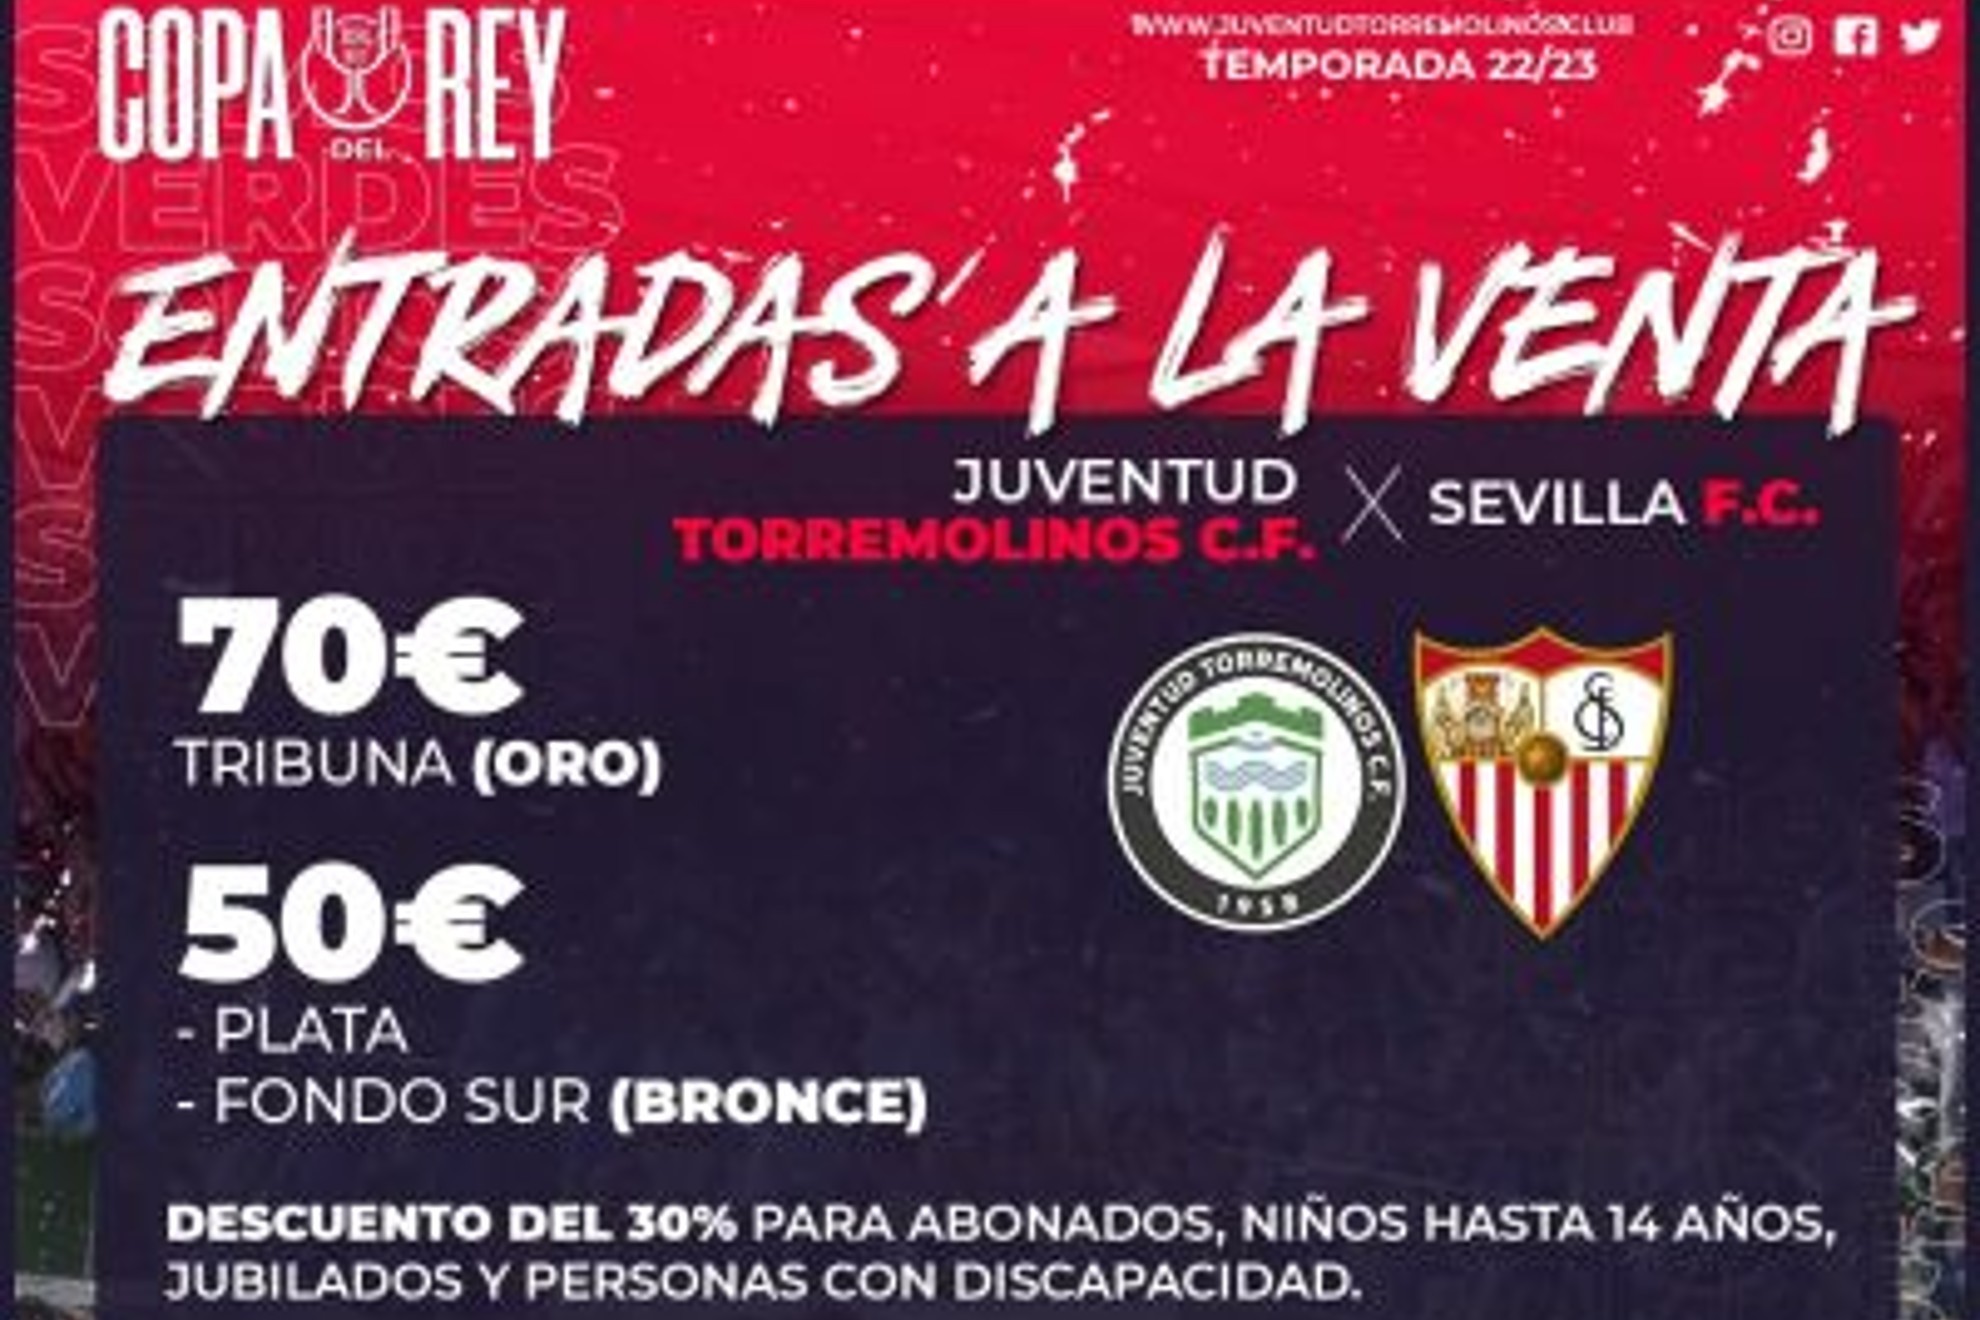 Precios de Champions por ver el Torremolinos - Sevilla en El Pozuelo